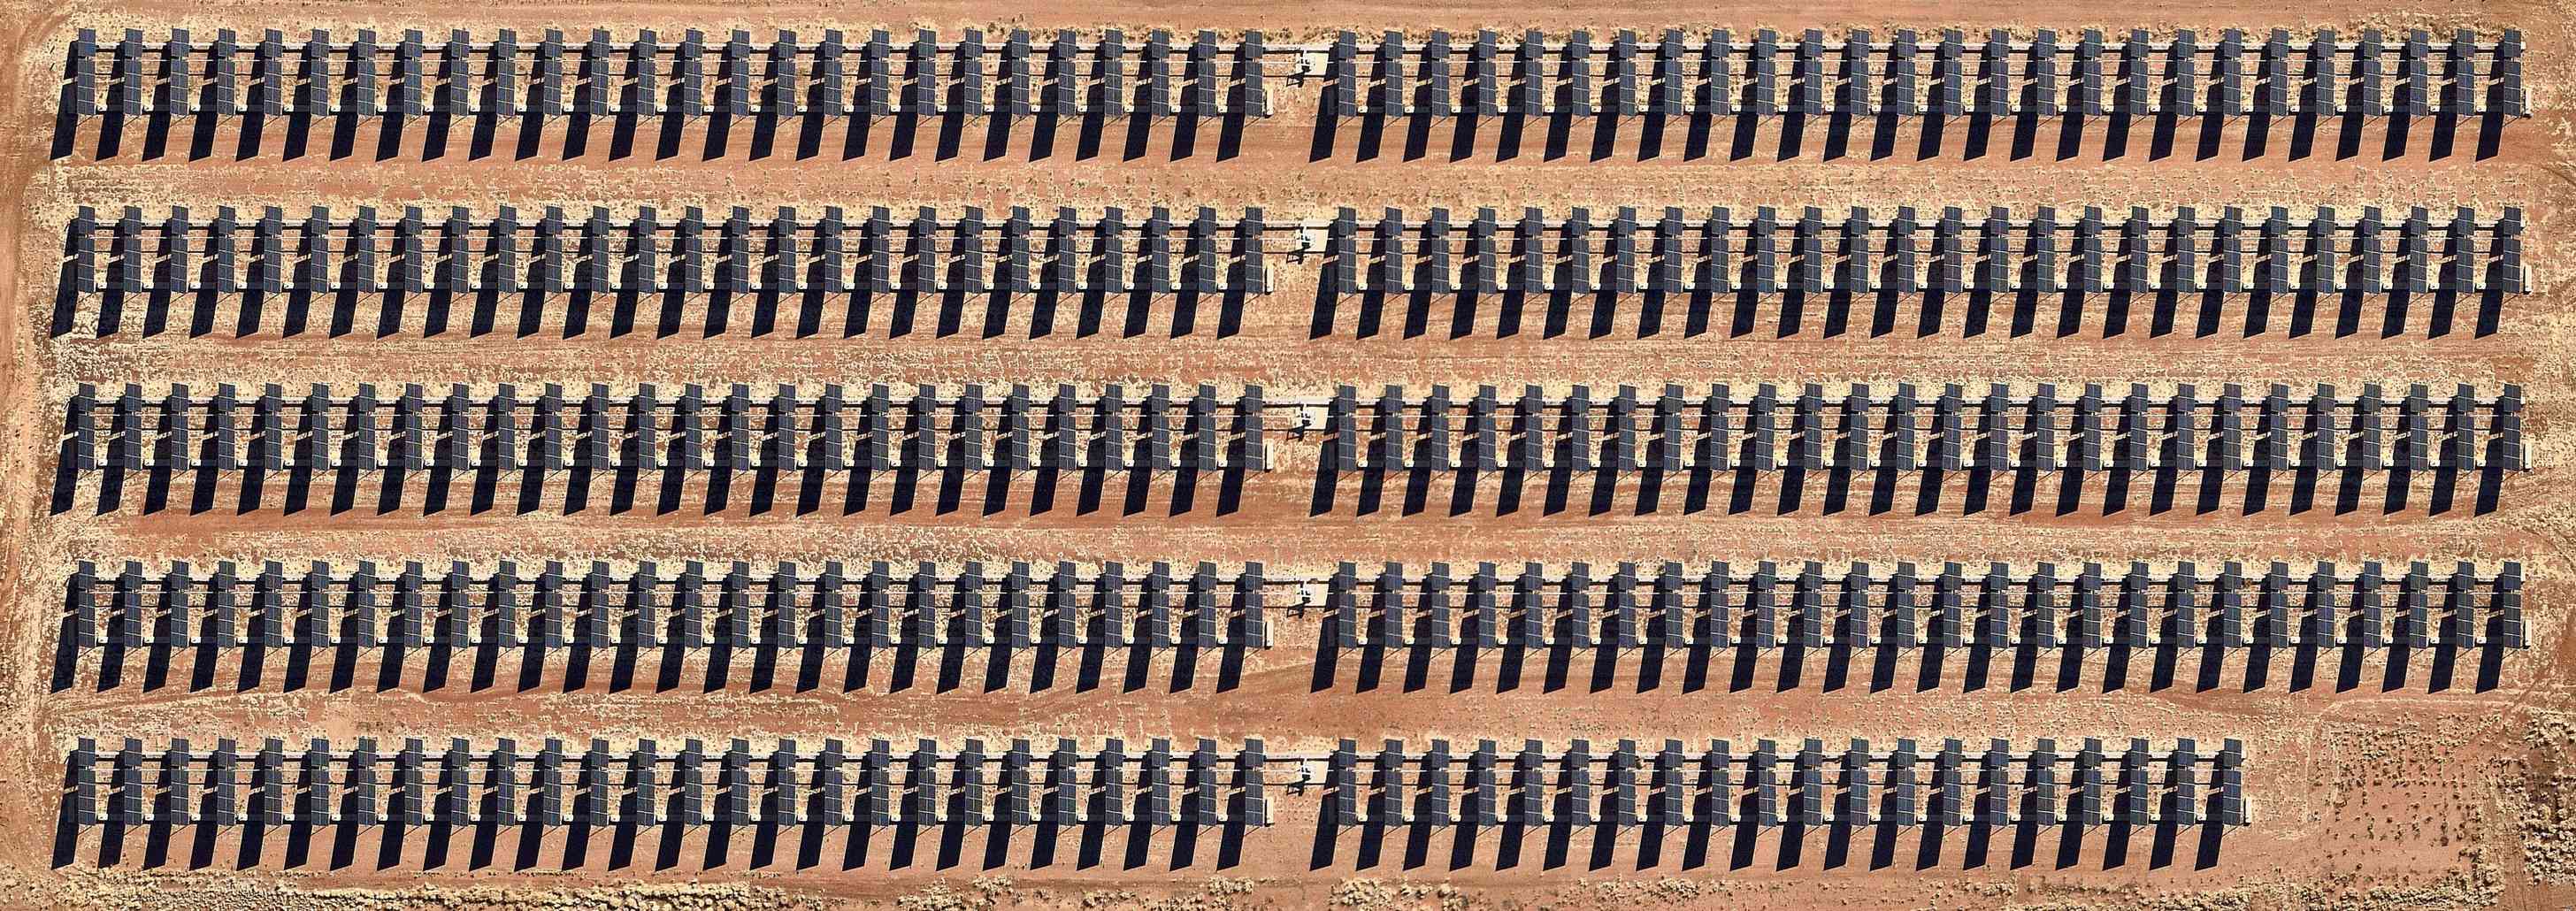 太阳能电池板，爱丽丝泉，澳大利亚北领地“width=